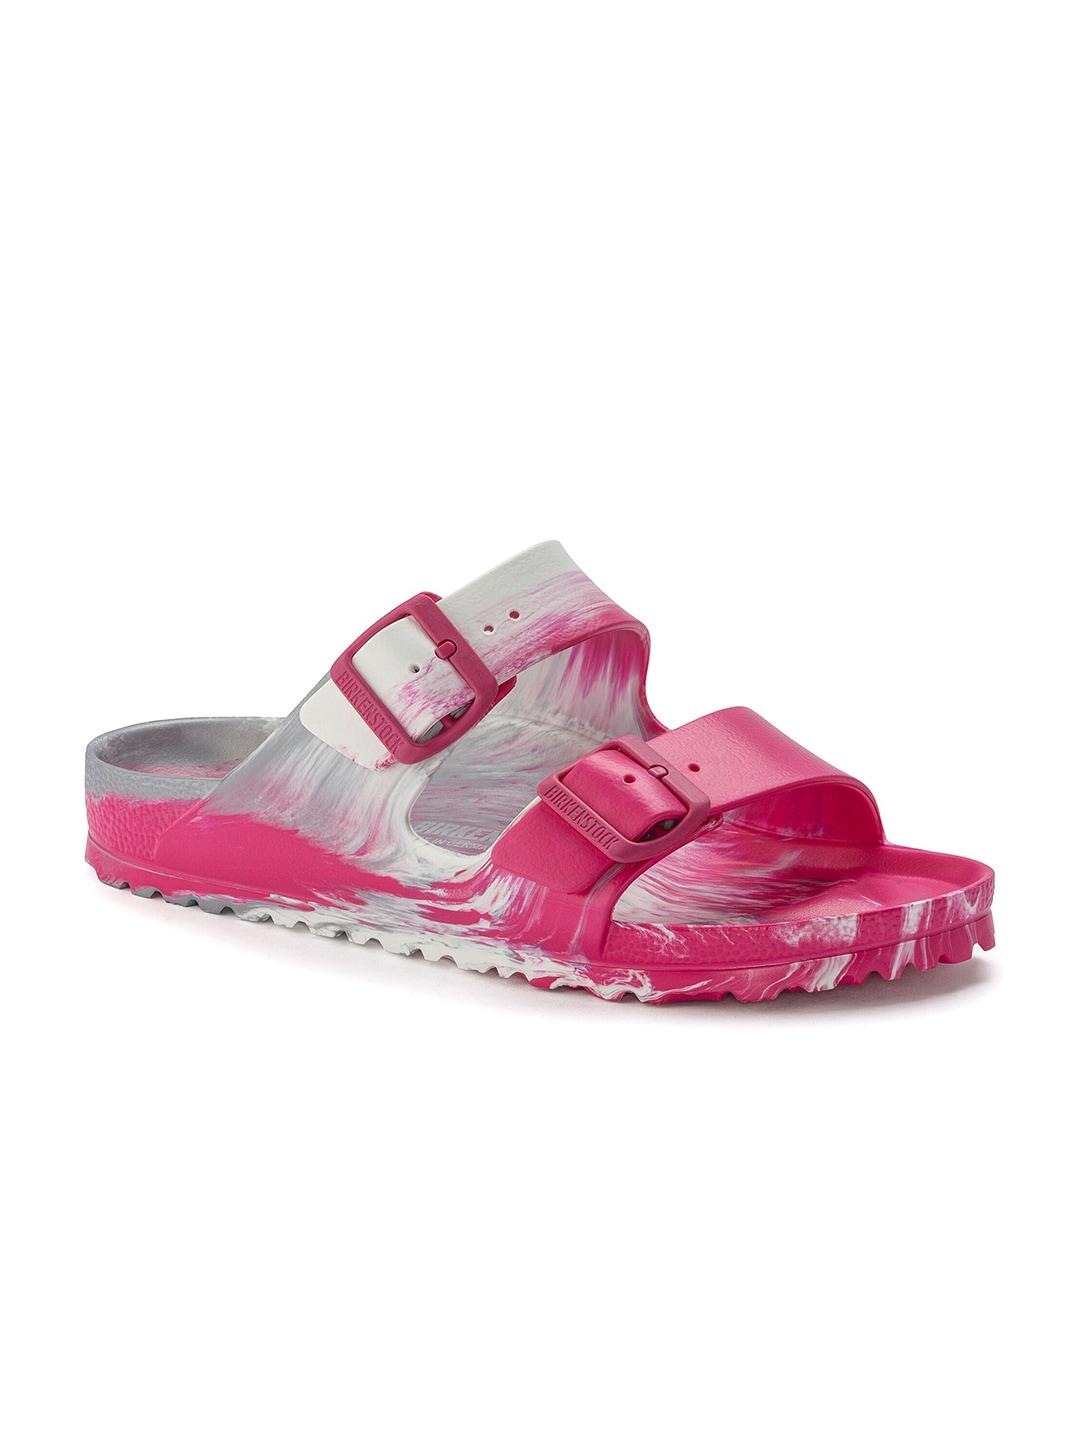 Birkenstock Unisex Grey & Pink Arizona Comfort Sandals